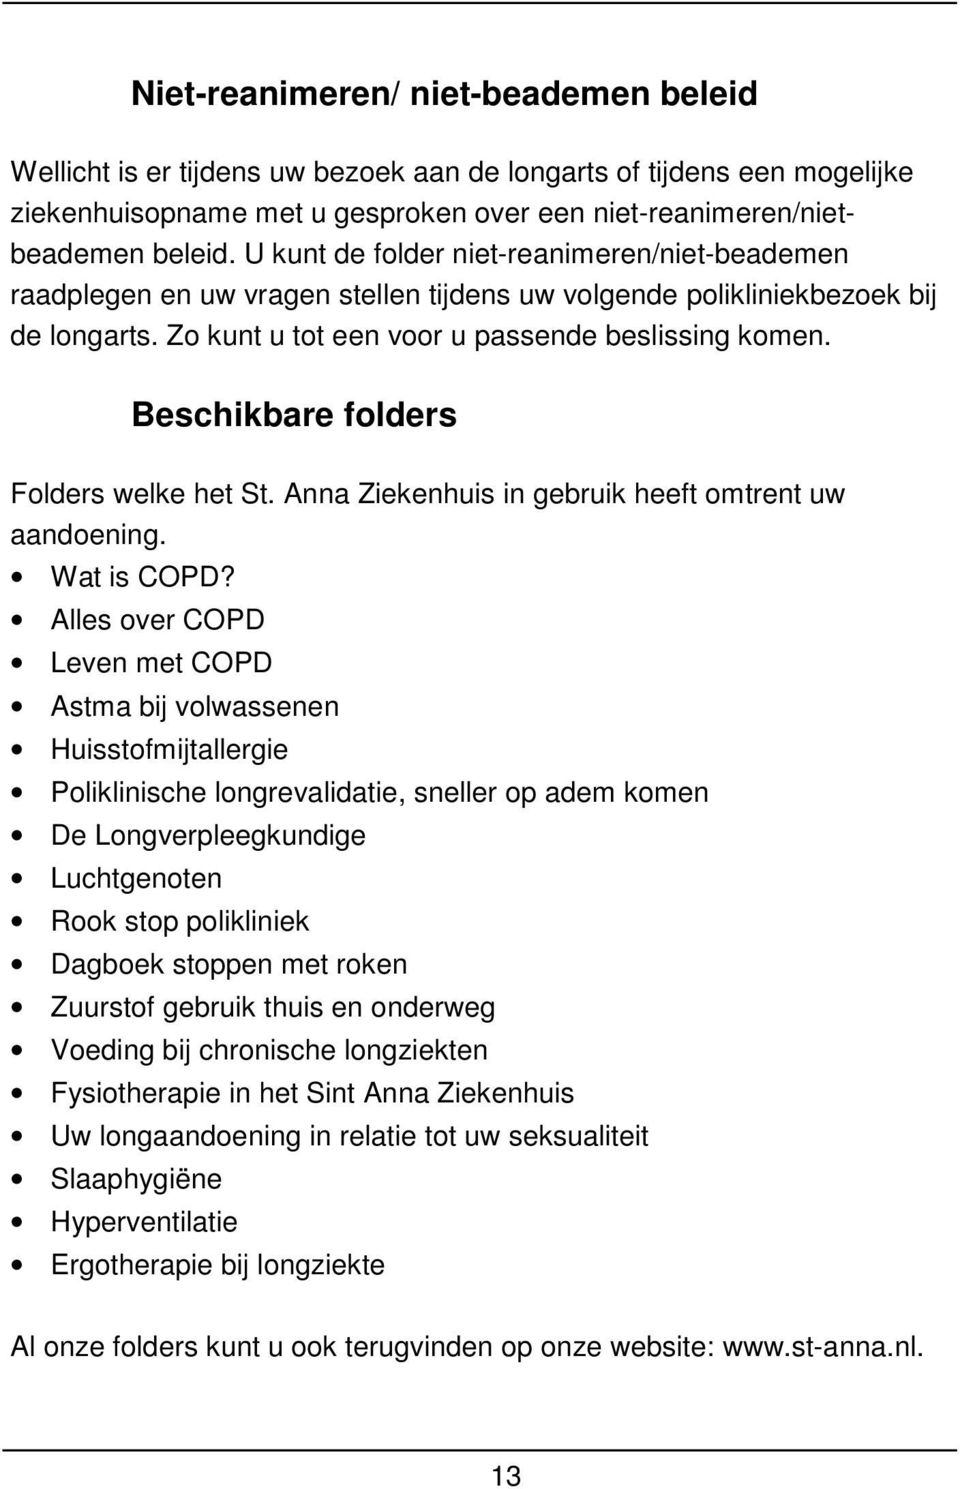 Beschikbare folders Folders welke het St. Anna Ziekenhuis in gebruik heeft omtrent uw aandoening. Wat is COPD?